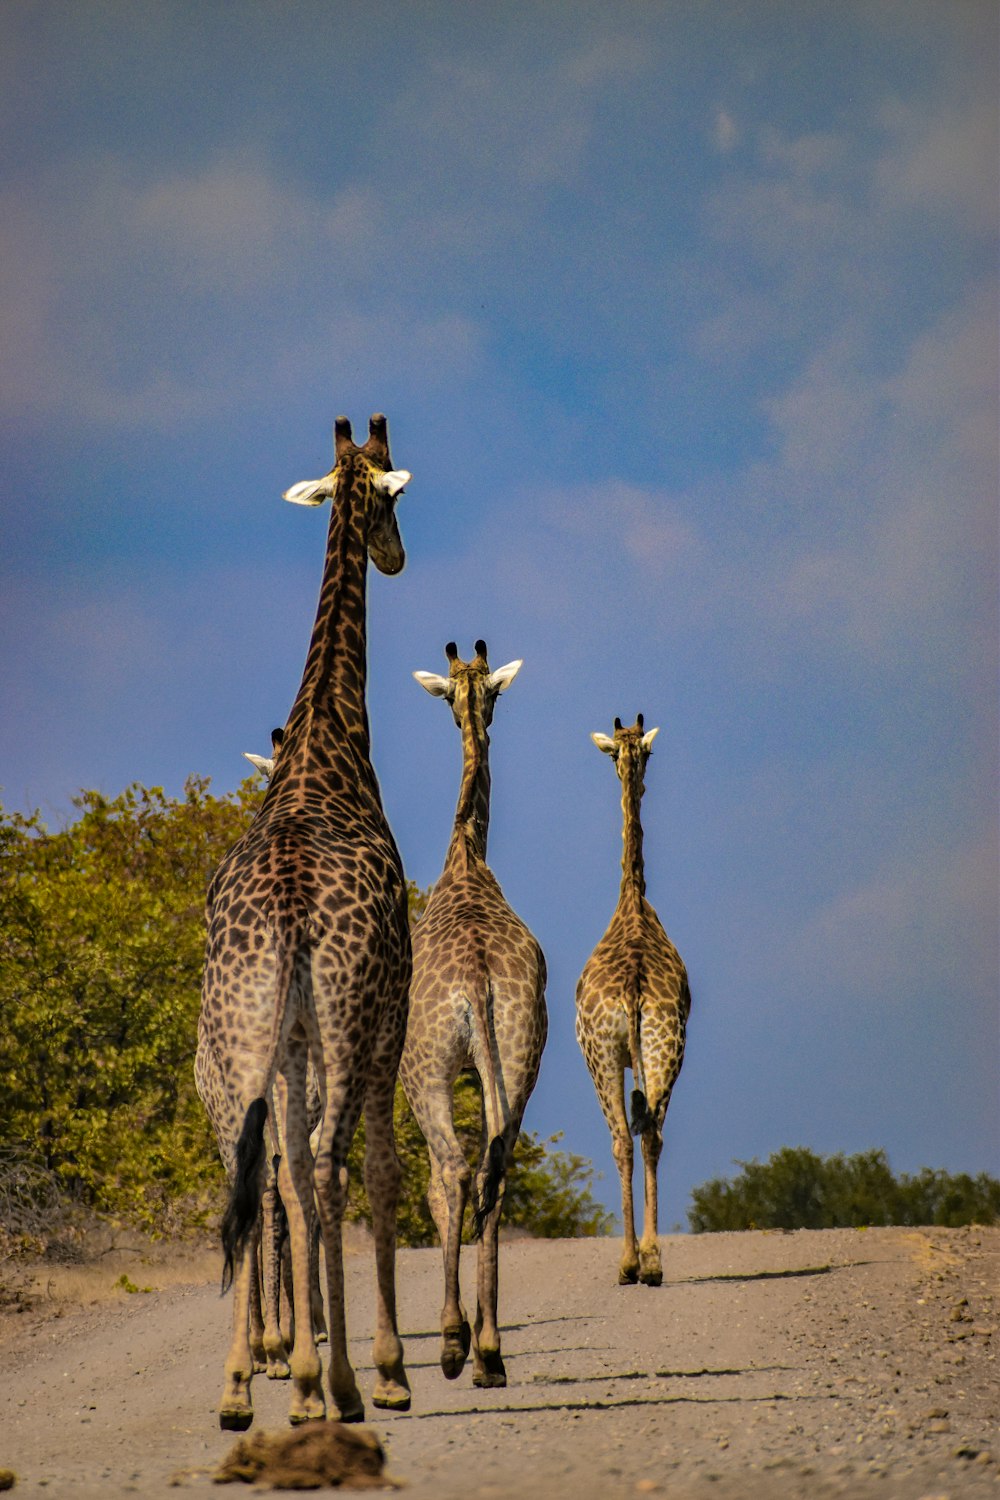 Un grupo de jirafas caminando por un camino de tierra